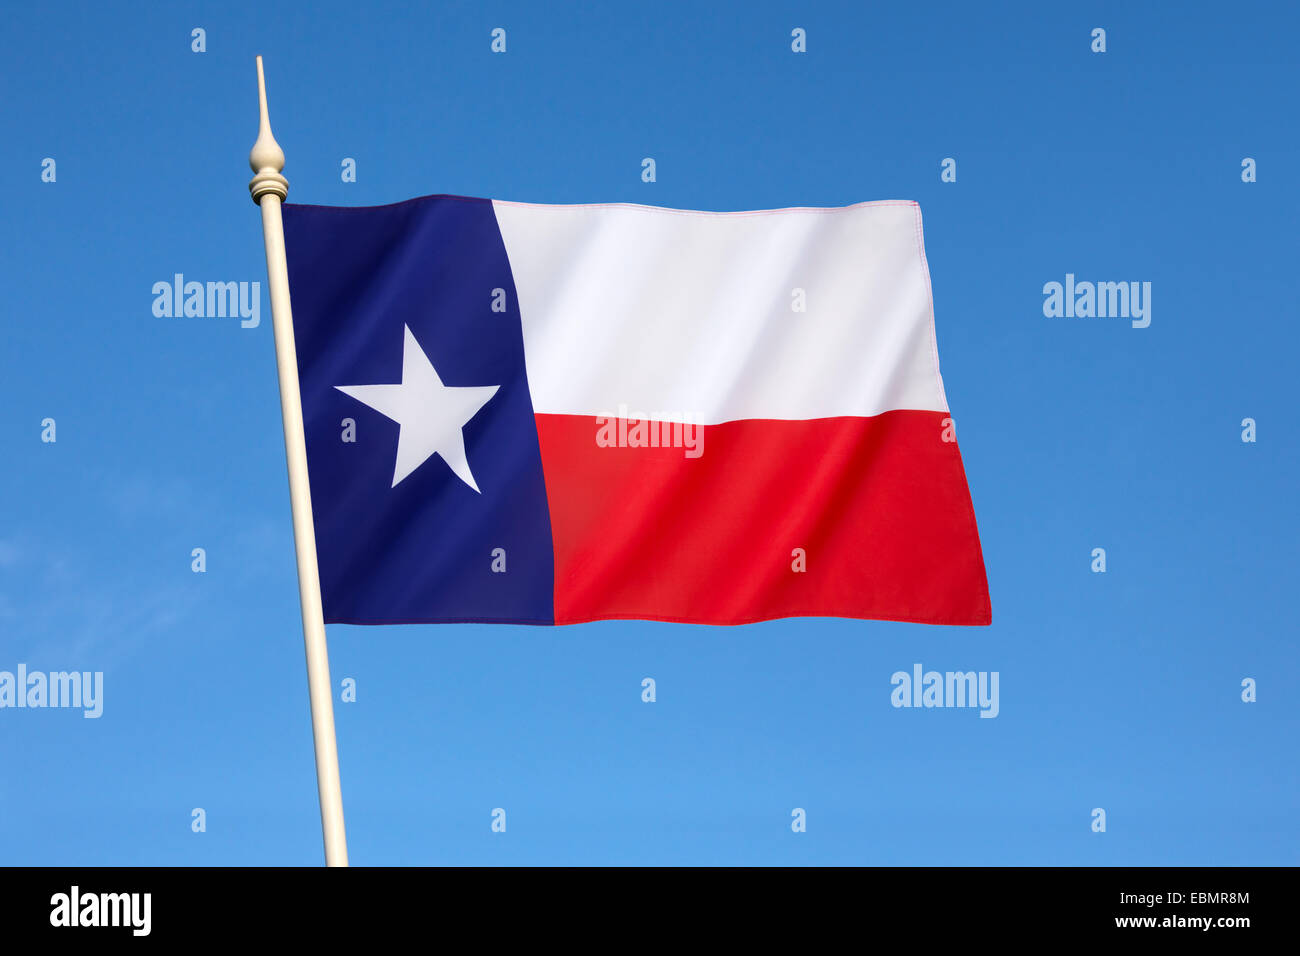 Die Flagge des Staates Texas - Vereinigte Staaten von Amerika Stockfoto